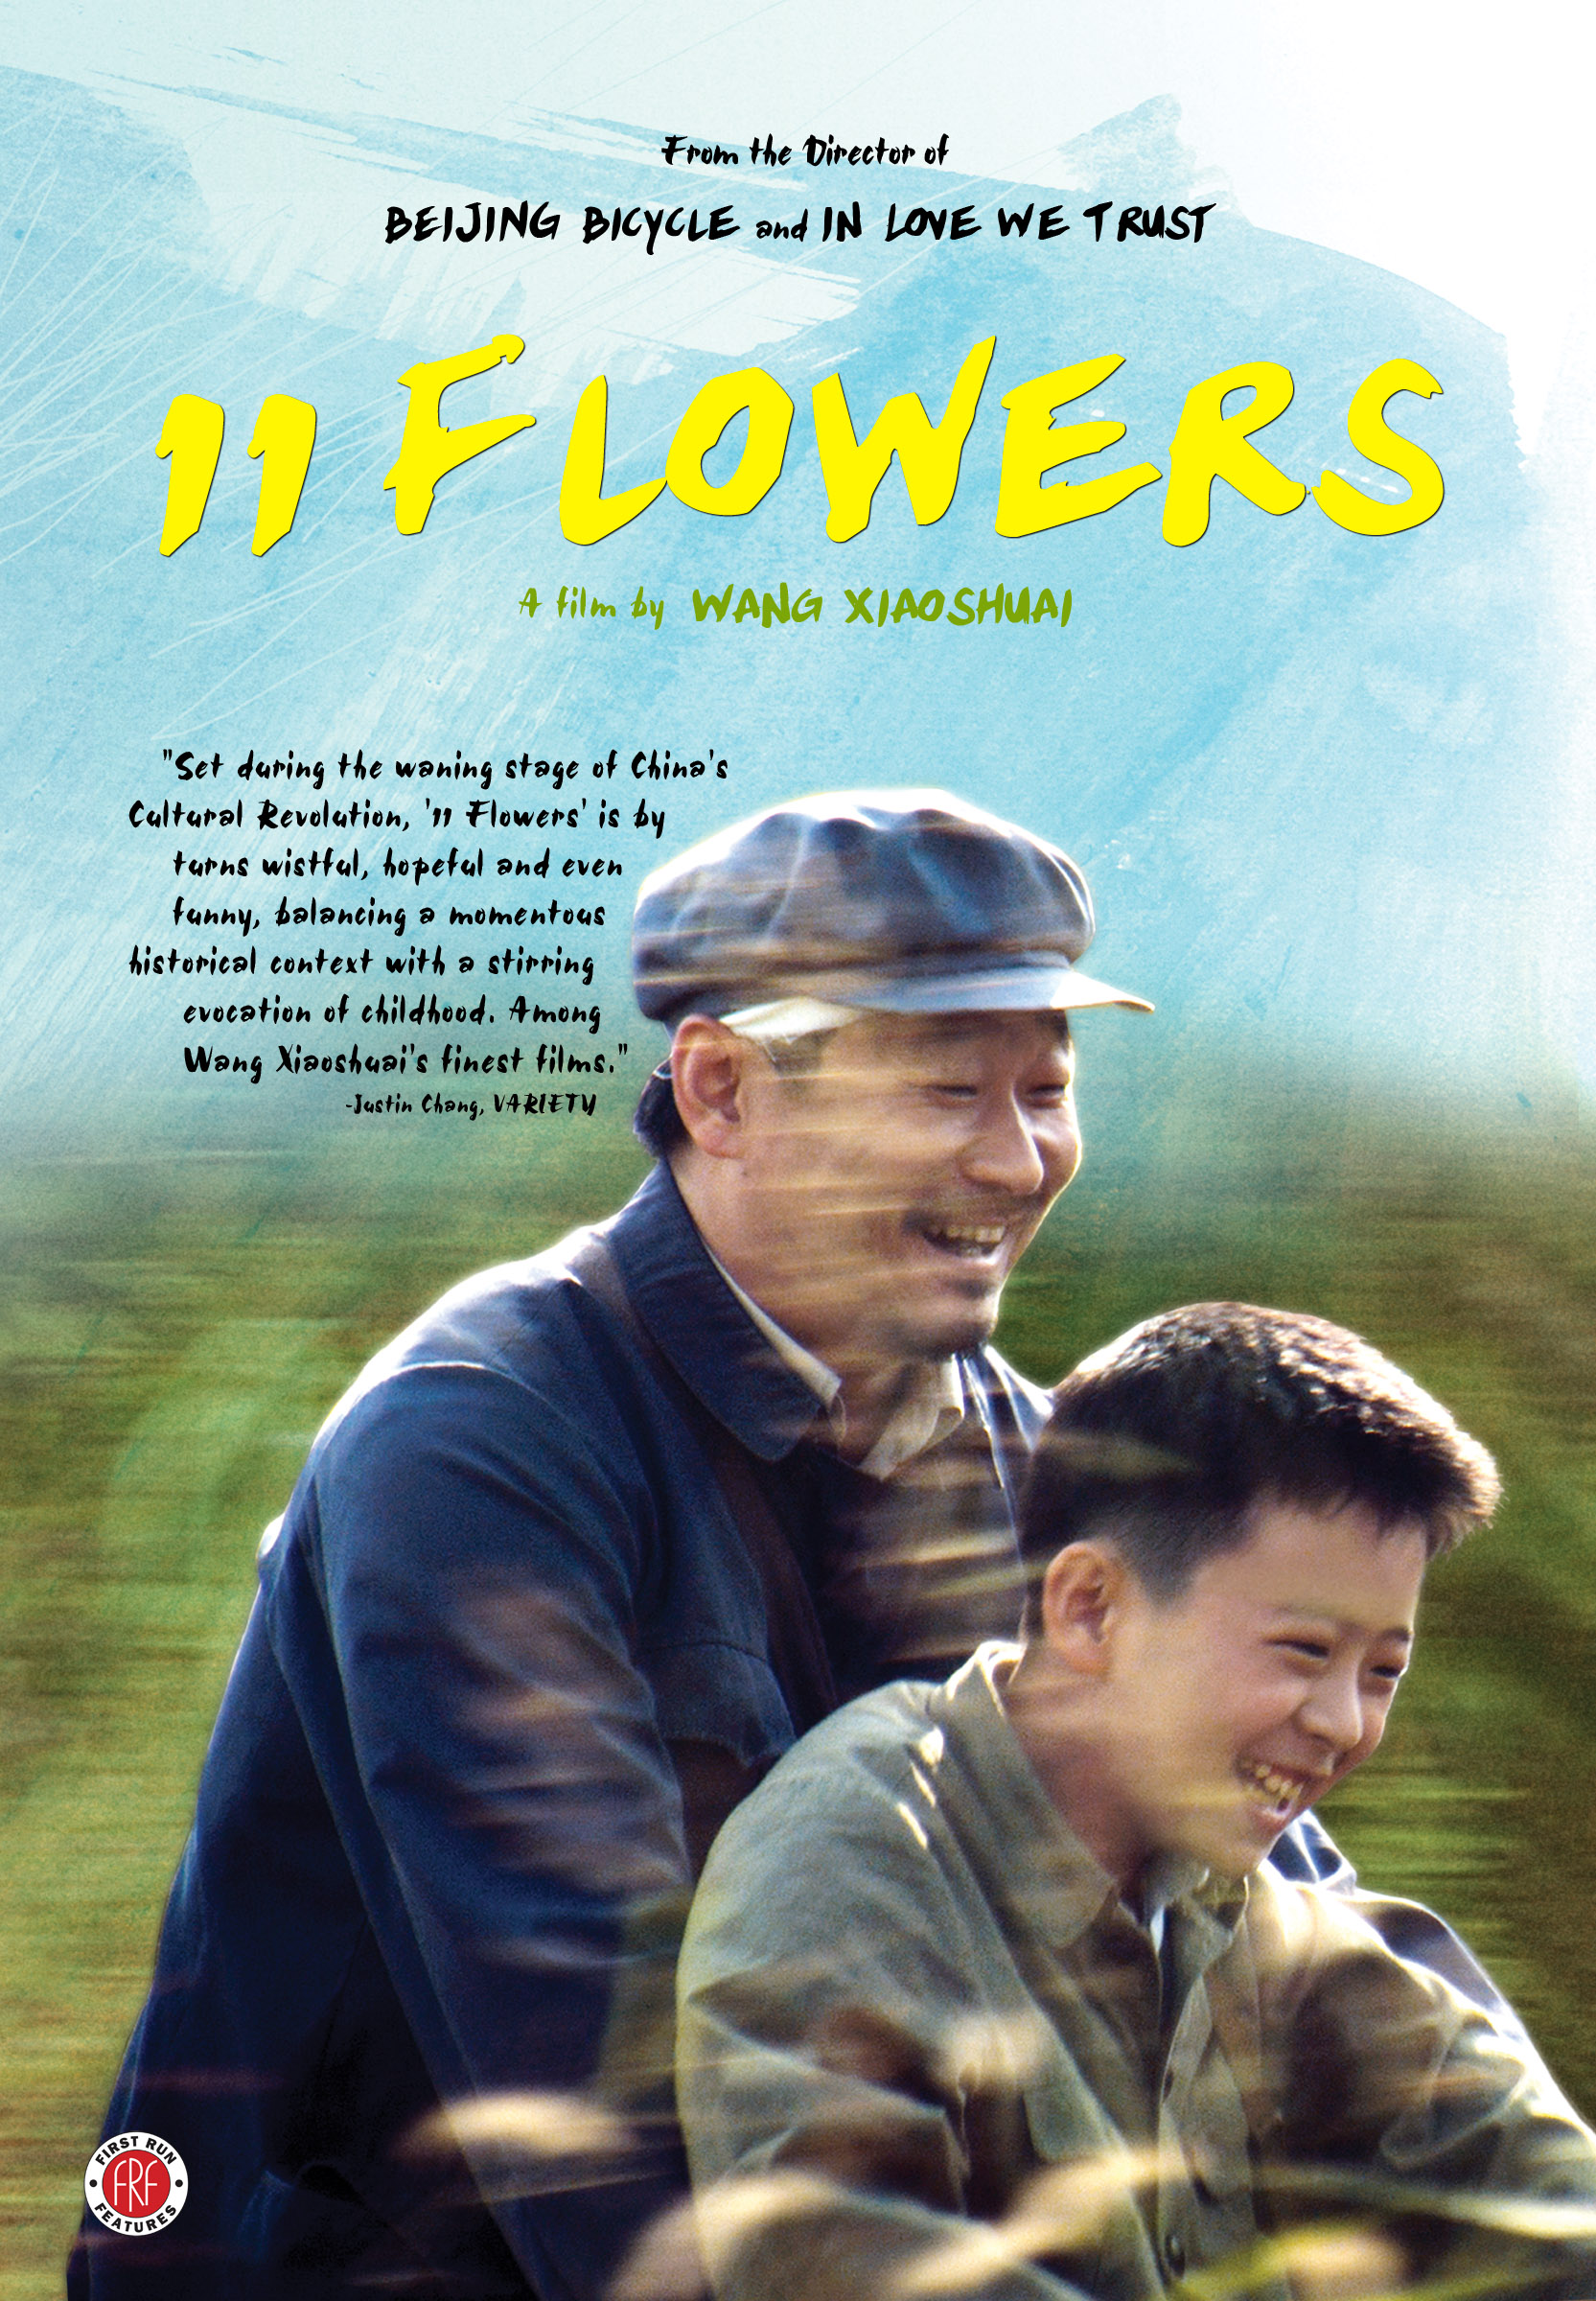 Movie Reviews: 11 Flowers